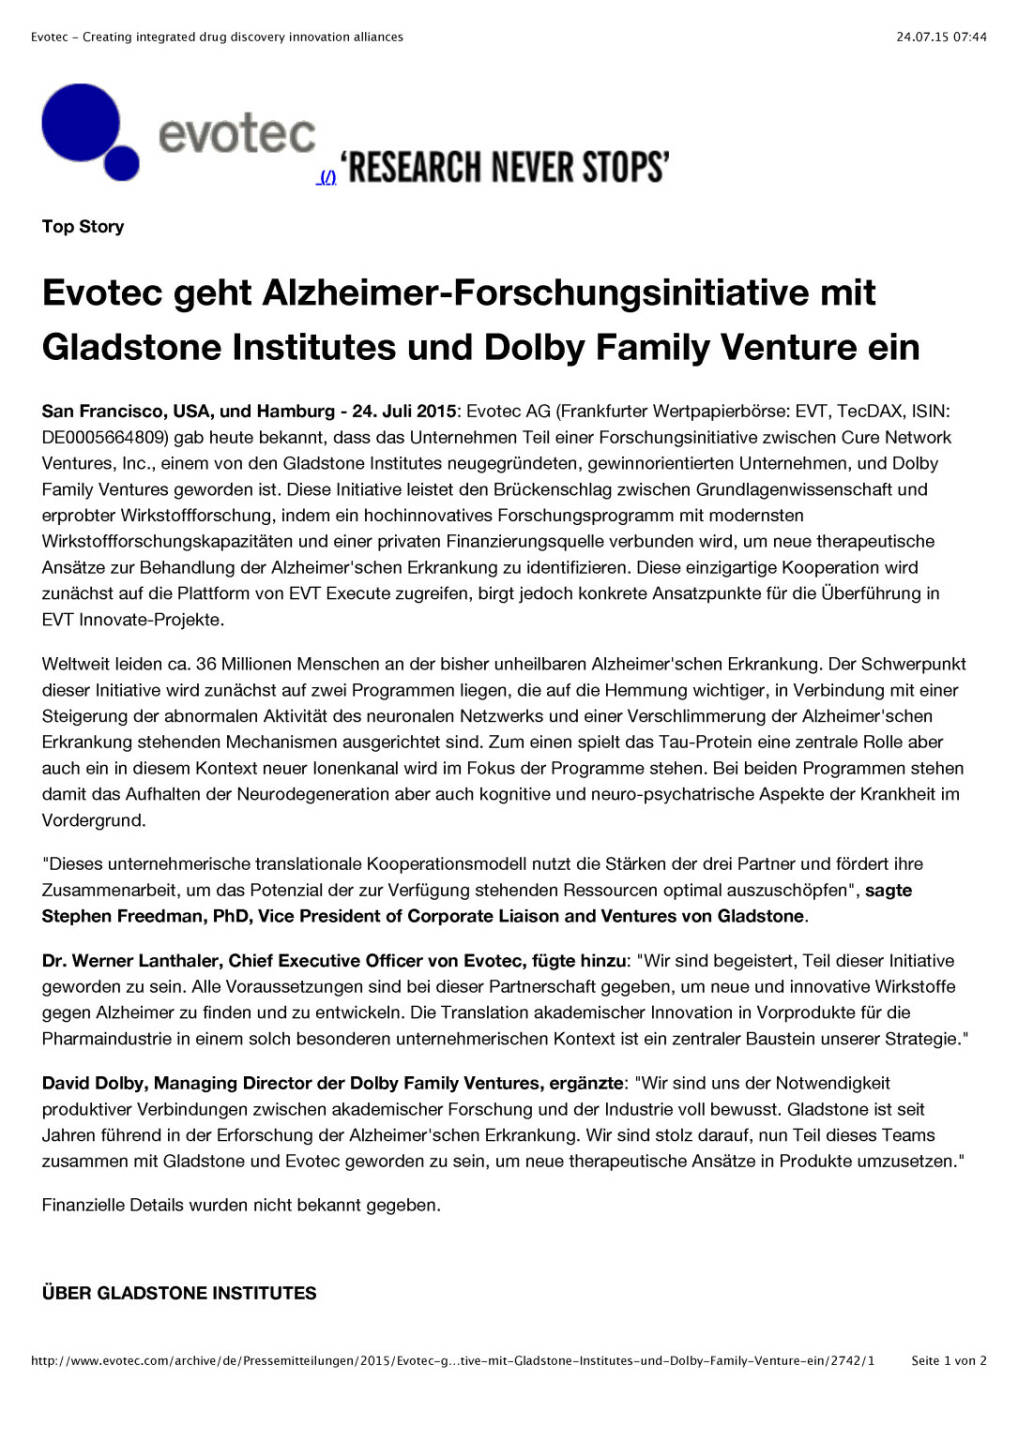 Evotec geht Alzheimer-Forschungsinitiative mit Gladstone Institutes und Dolby Family Venture ein, Seite 1/2, komplettes Dokument unter http://boerse-social.com/static/uploads/file_246_evotec_geht_alzheimer-forschungsinitiative_mit_gladstone_institutes_und_dolby_family_venture_ein.pdf